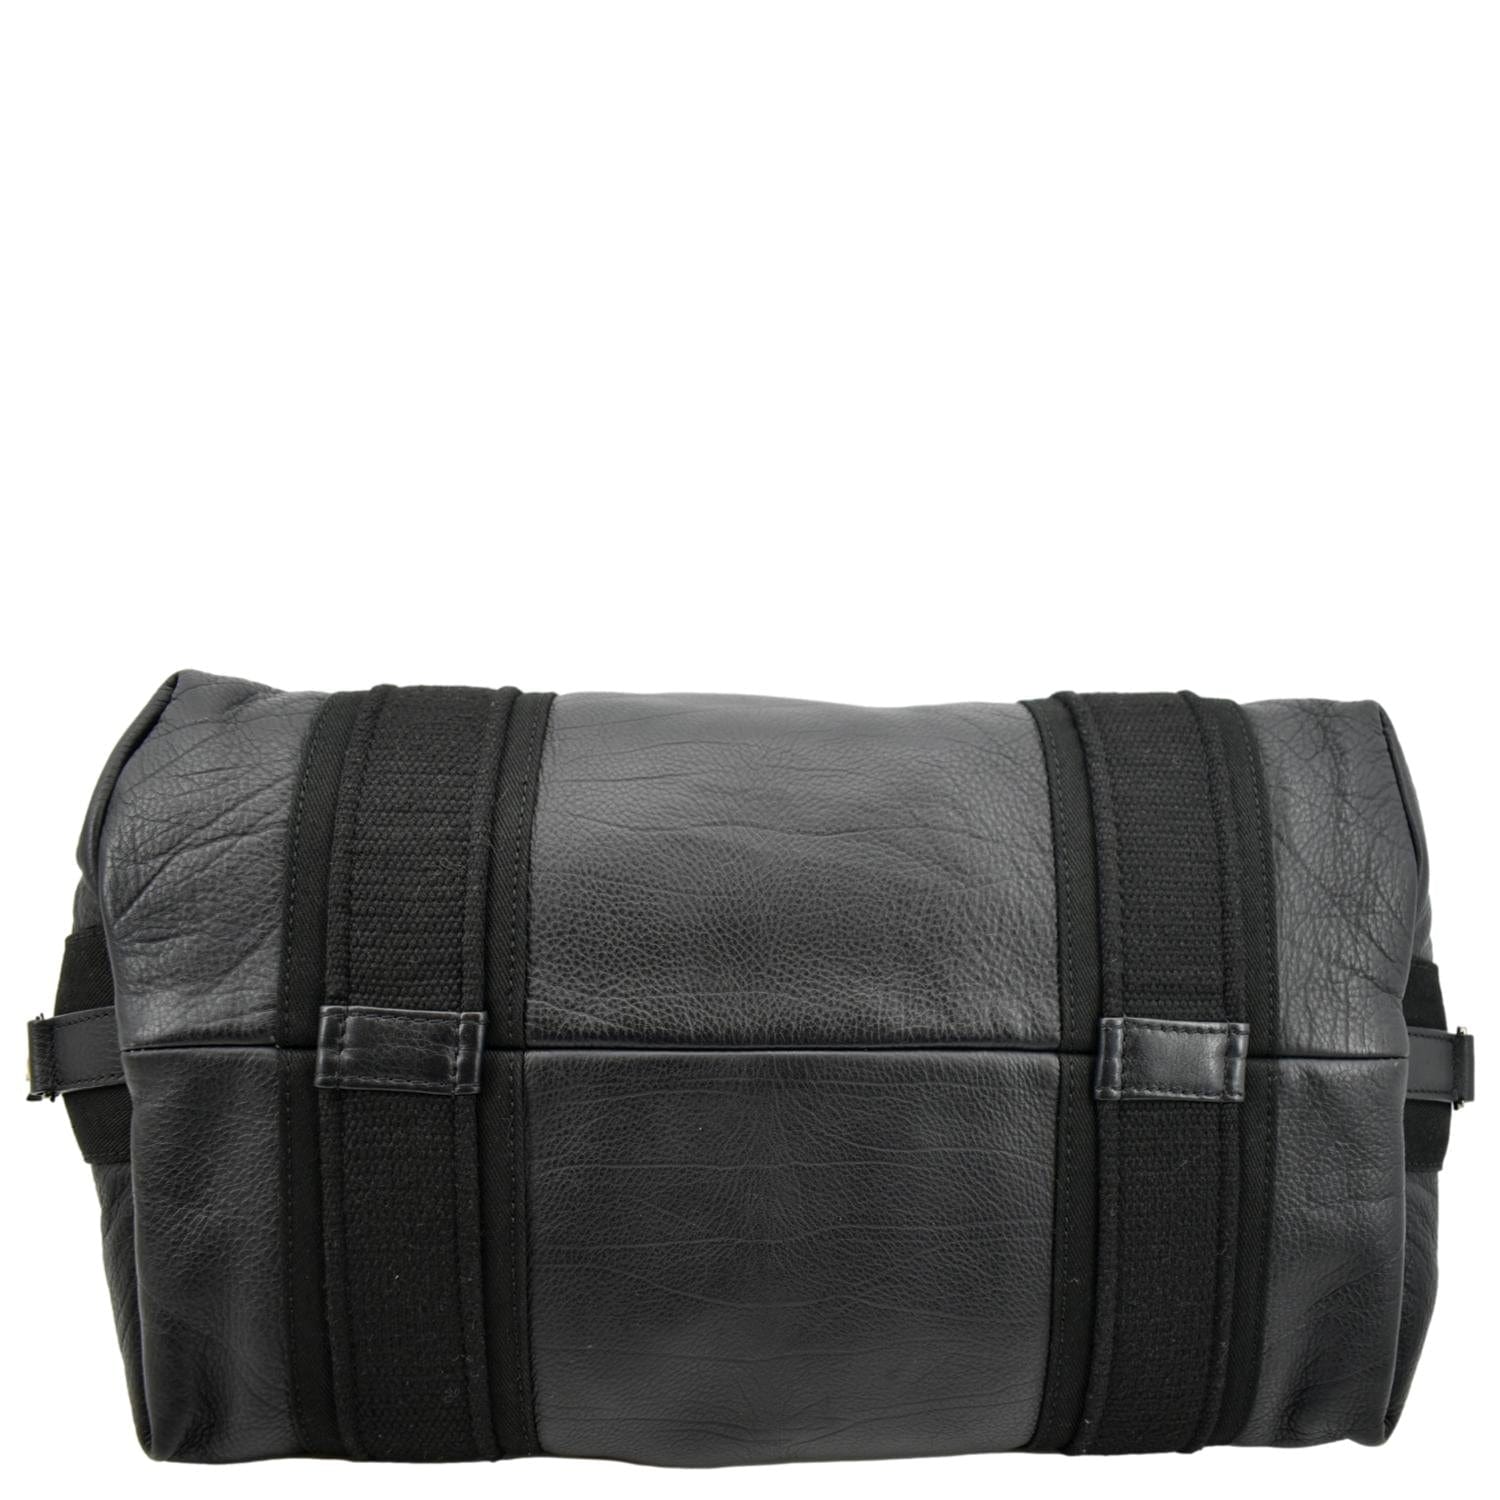 Chanel 2way Leather Shoulder Bag Black